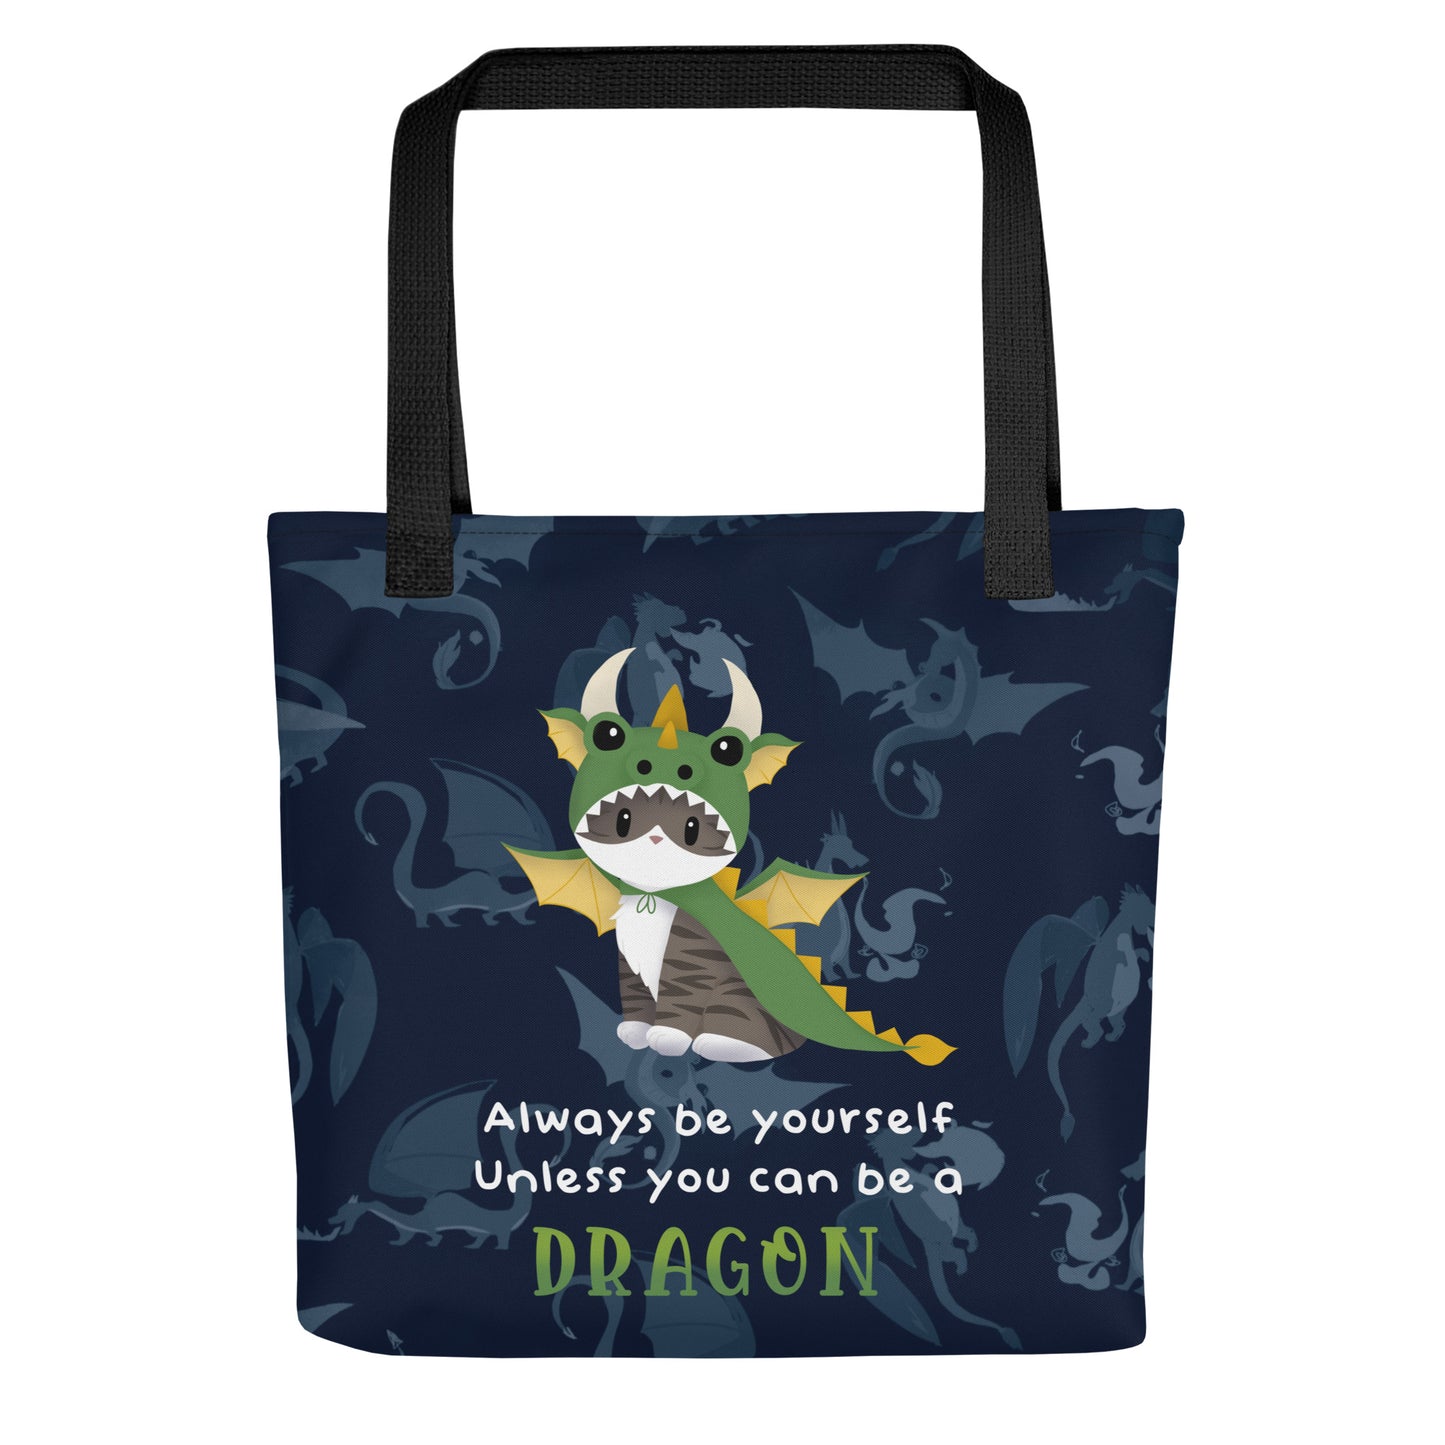 Jack the Dragon Kitty Tote Bag